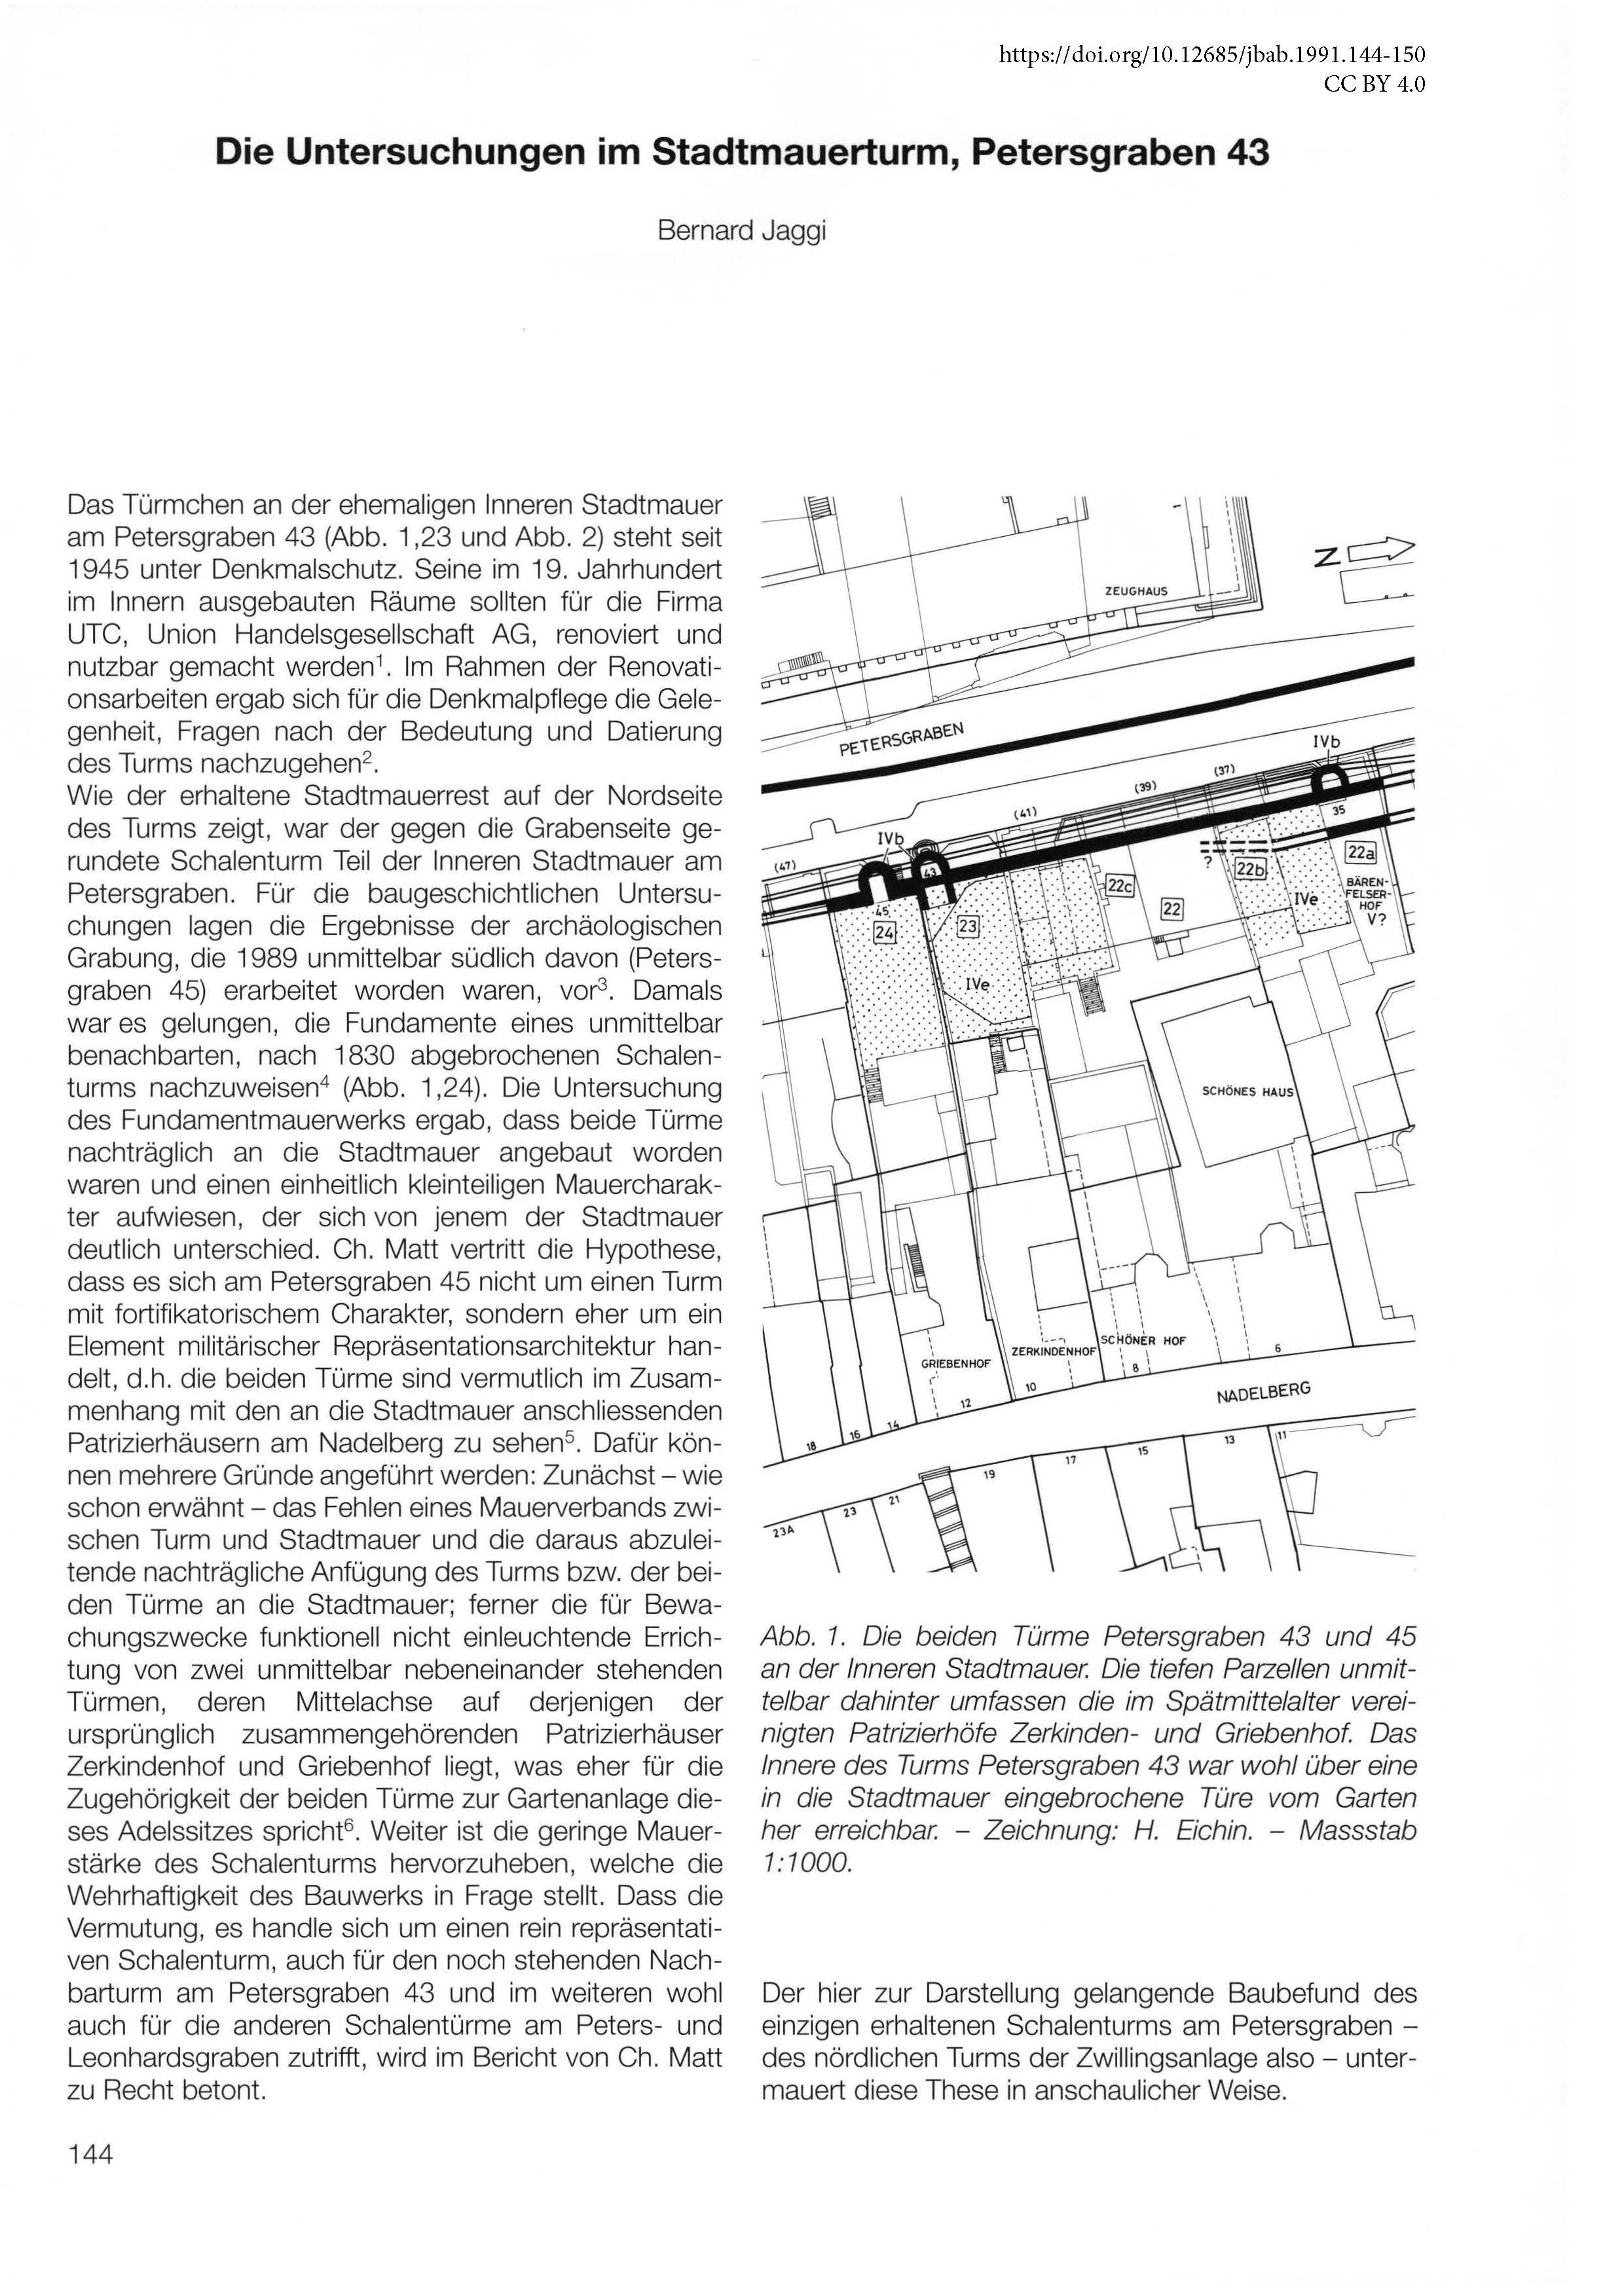 Erste Seite des Artikels über den Stadtmauerturm am Petersgraben